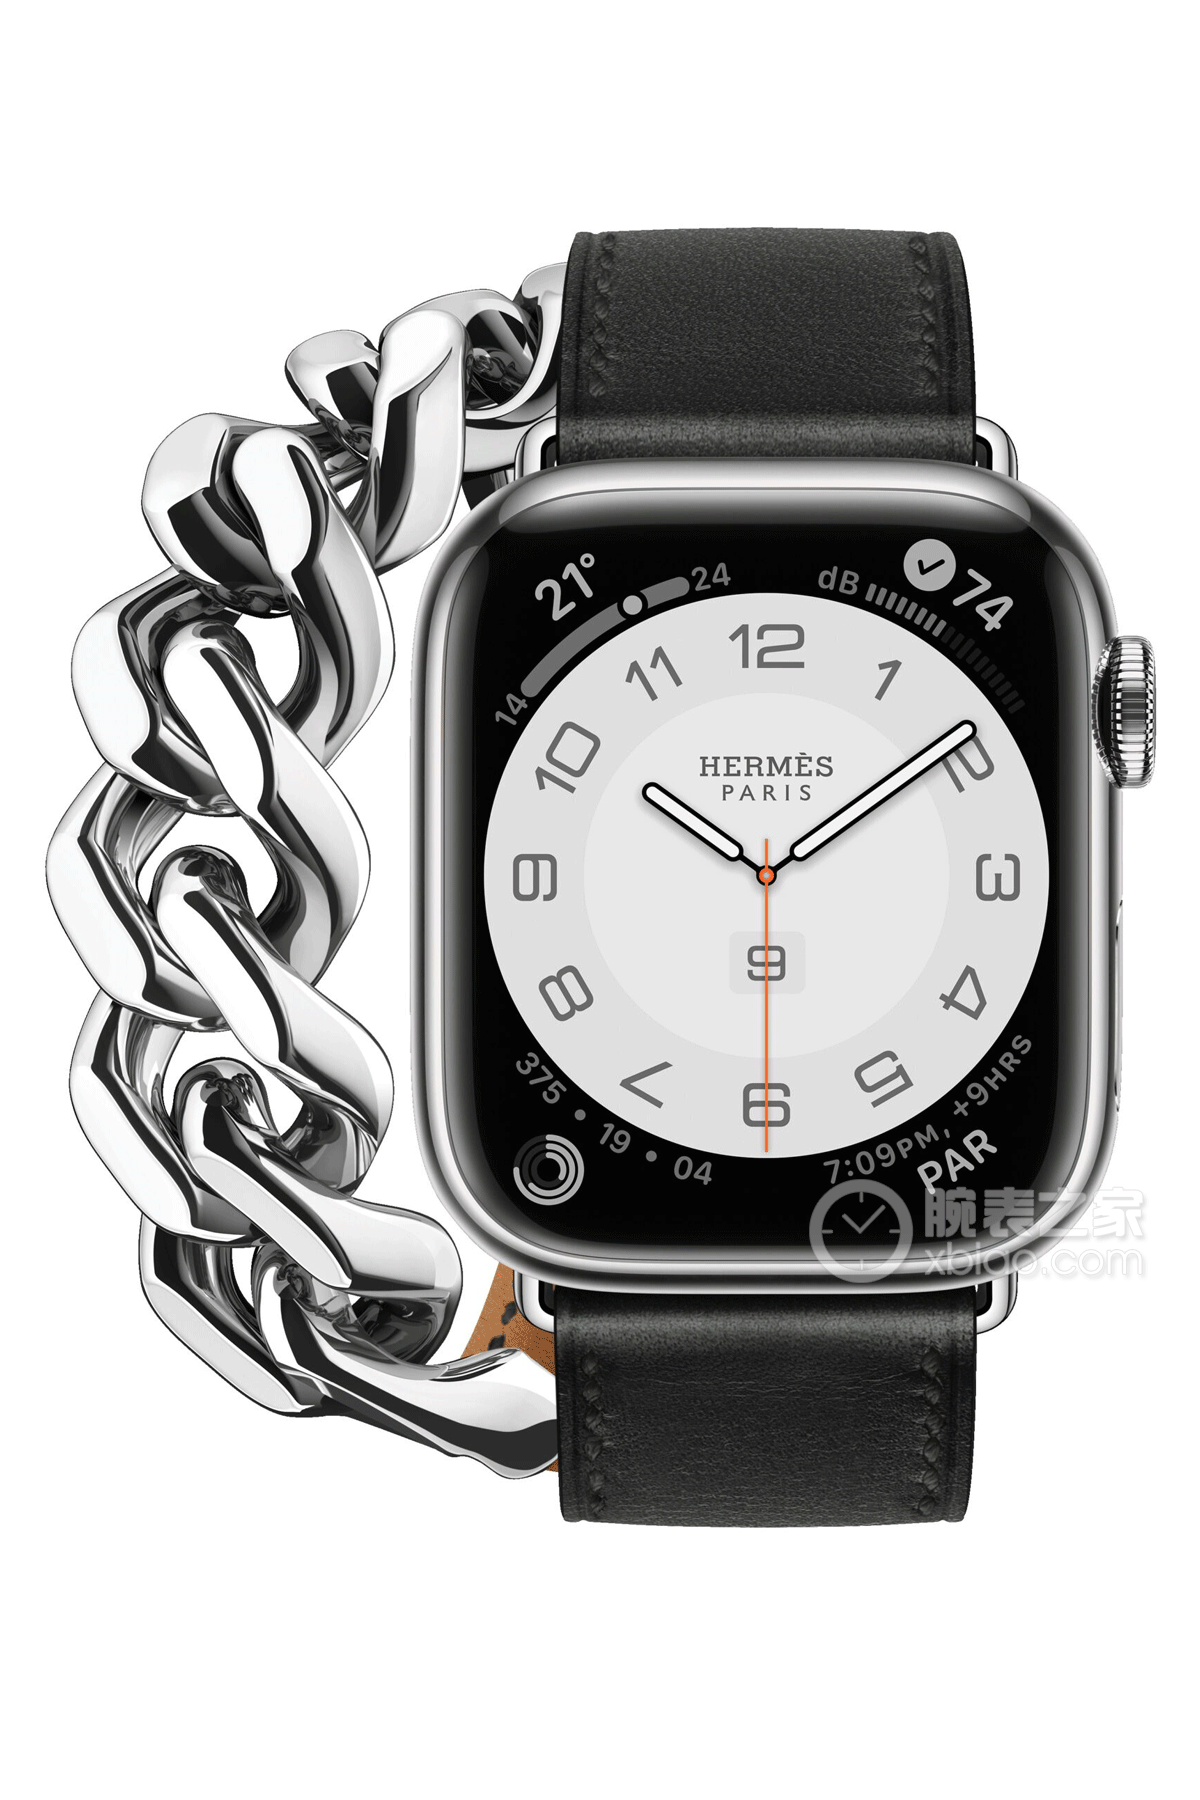 爱马仕APPLE WATCH HERMES系列Apple Watch Hermès Series 8 黑盘白心